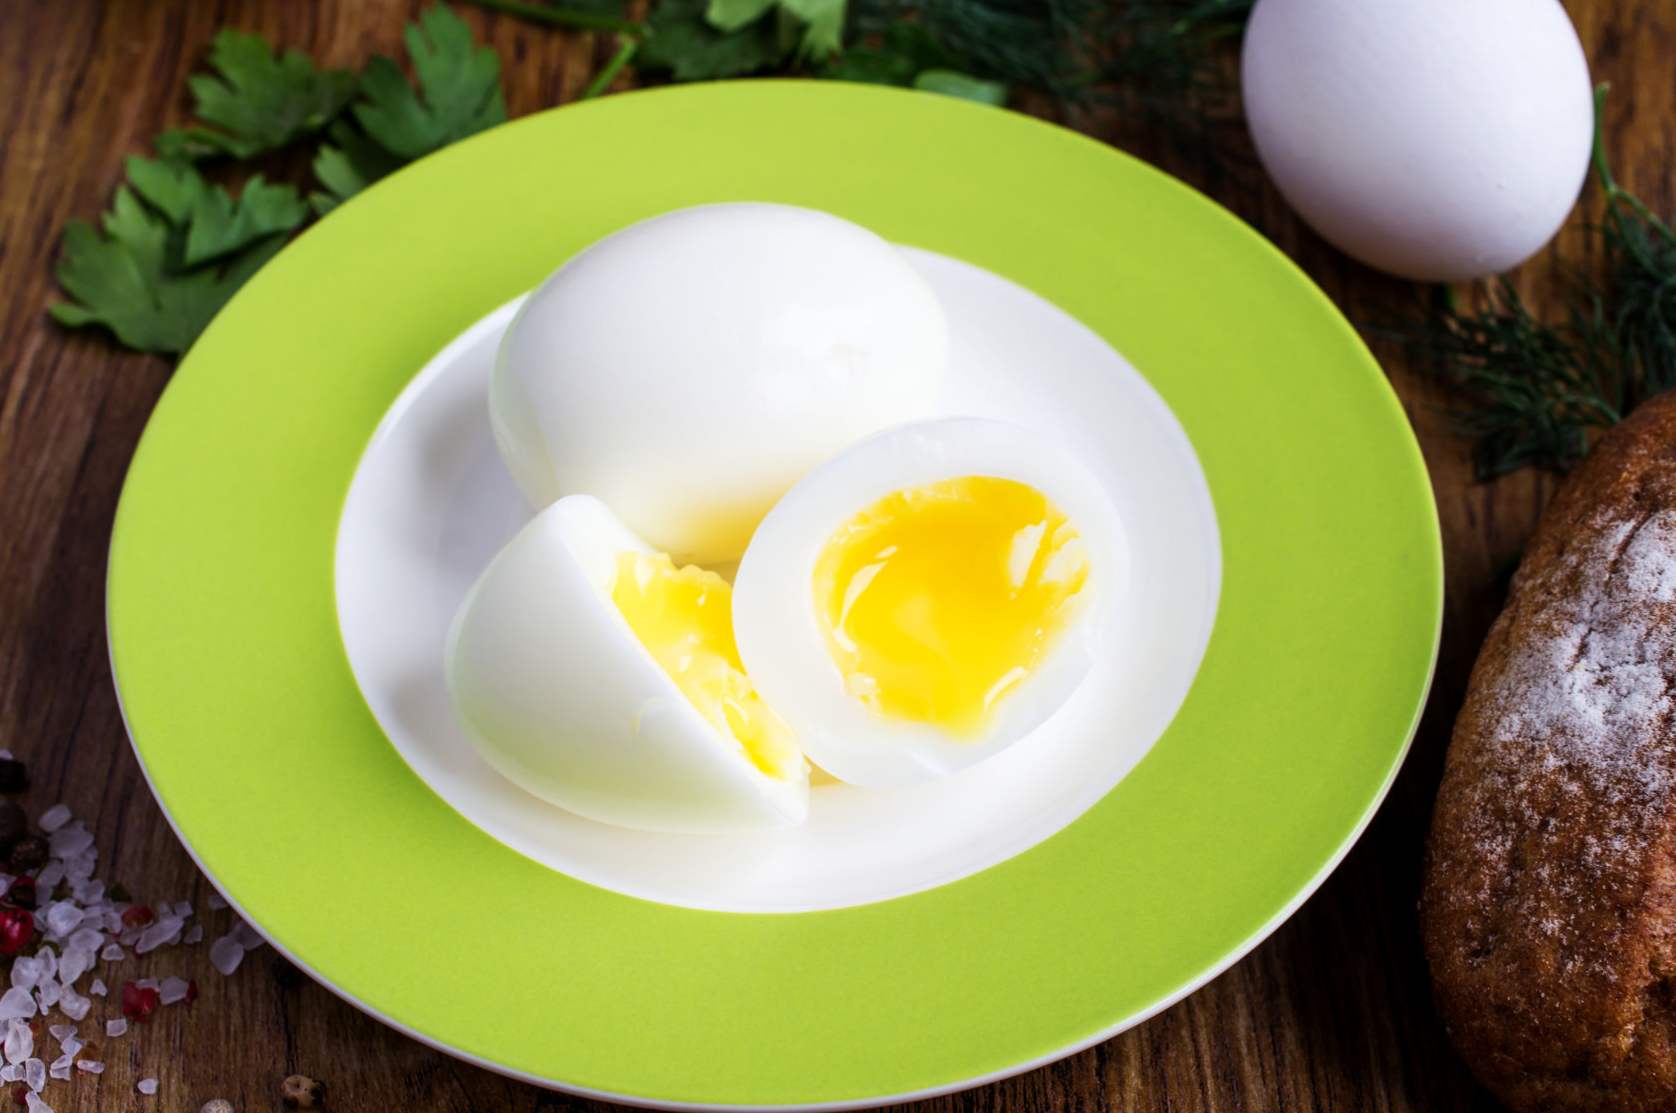 Jaja u vrećici - koliko minuta kuhati nakon vrenja